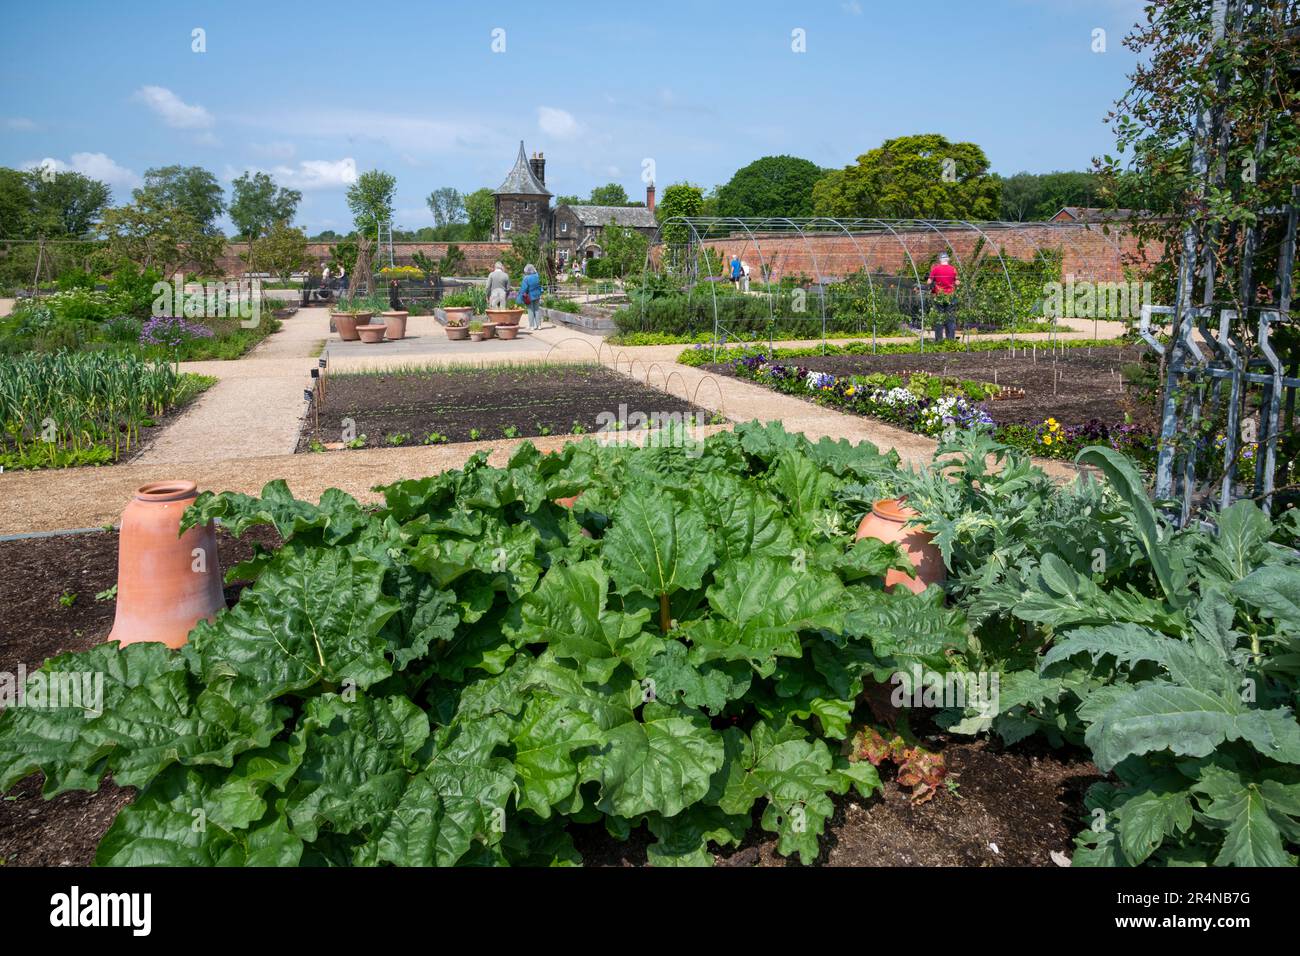 Le jardin de la cuisine à RHS Bridgewater, Worsley Greater Manchester, Angleterre. Banque D'Images